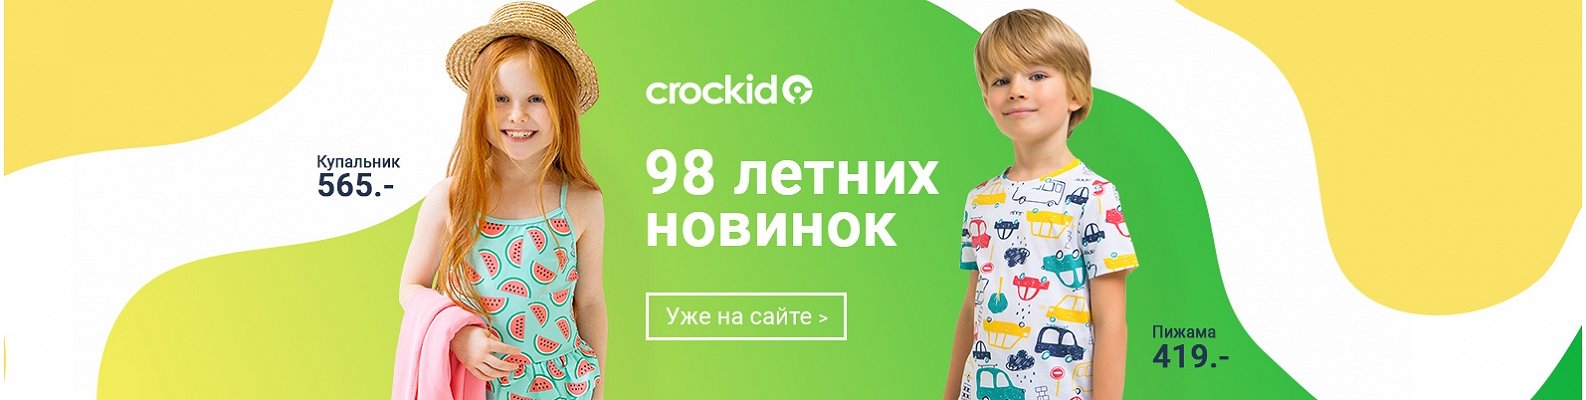 HAPPYWEAR мужчинам. Optrf ru оптовый интернет магазин одежды